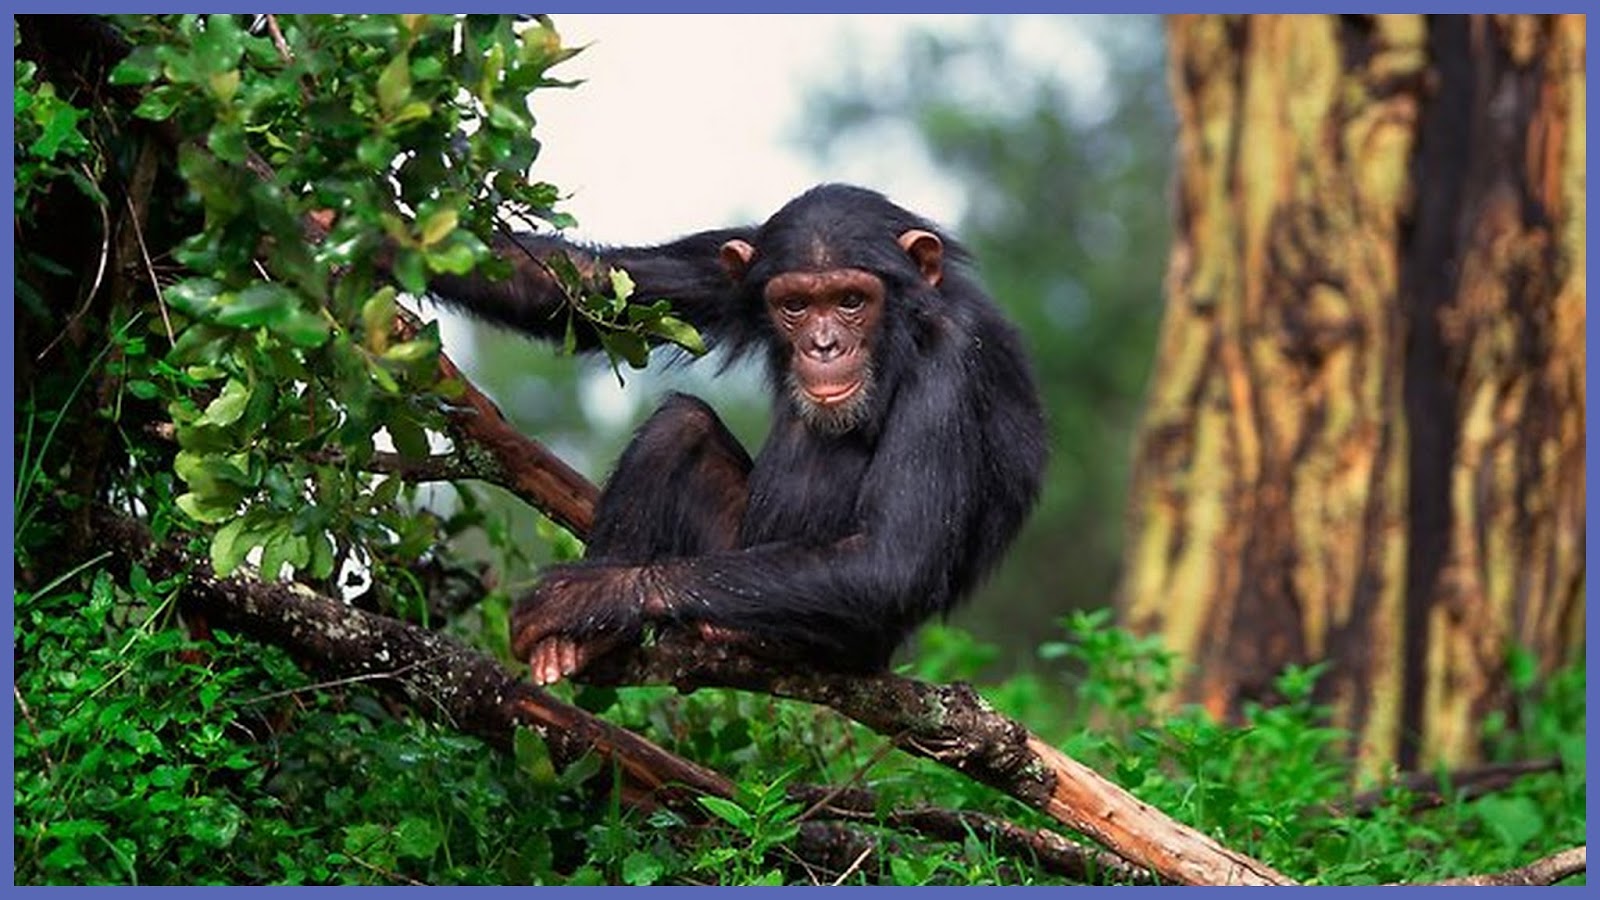 Шимпанзе обитают